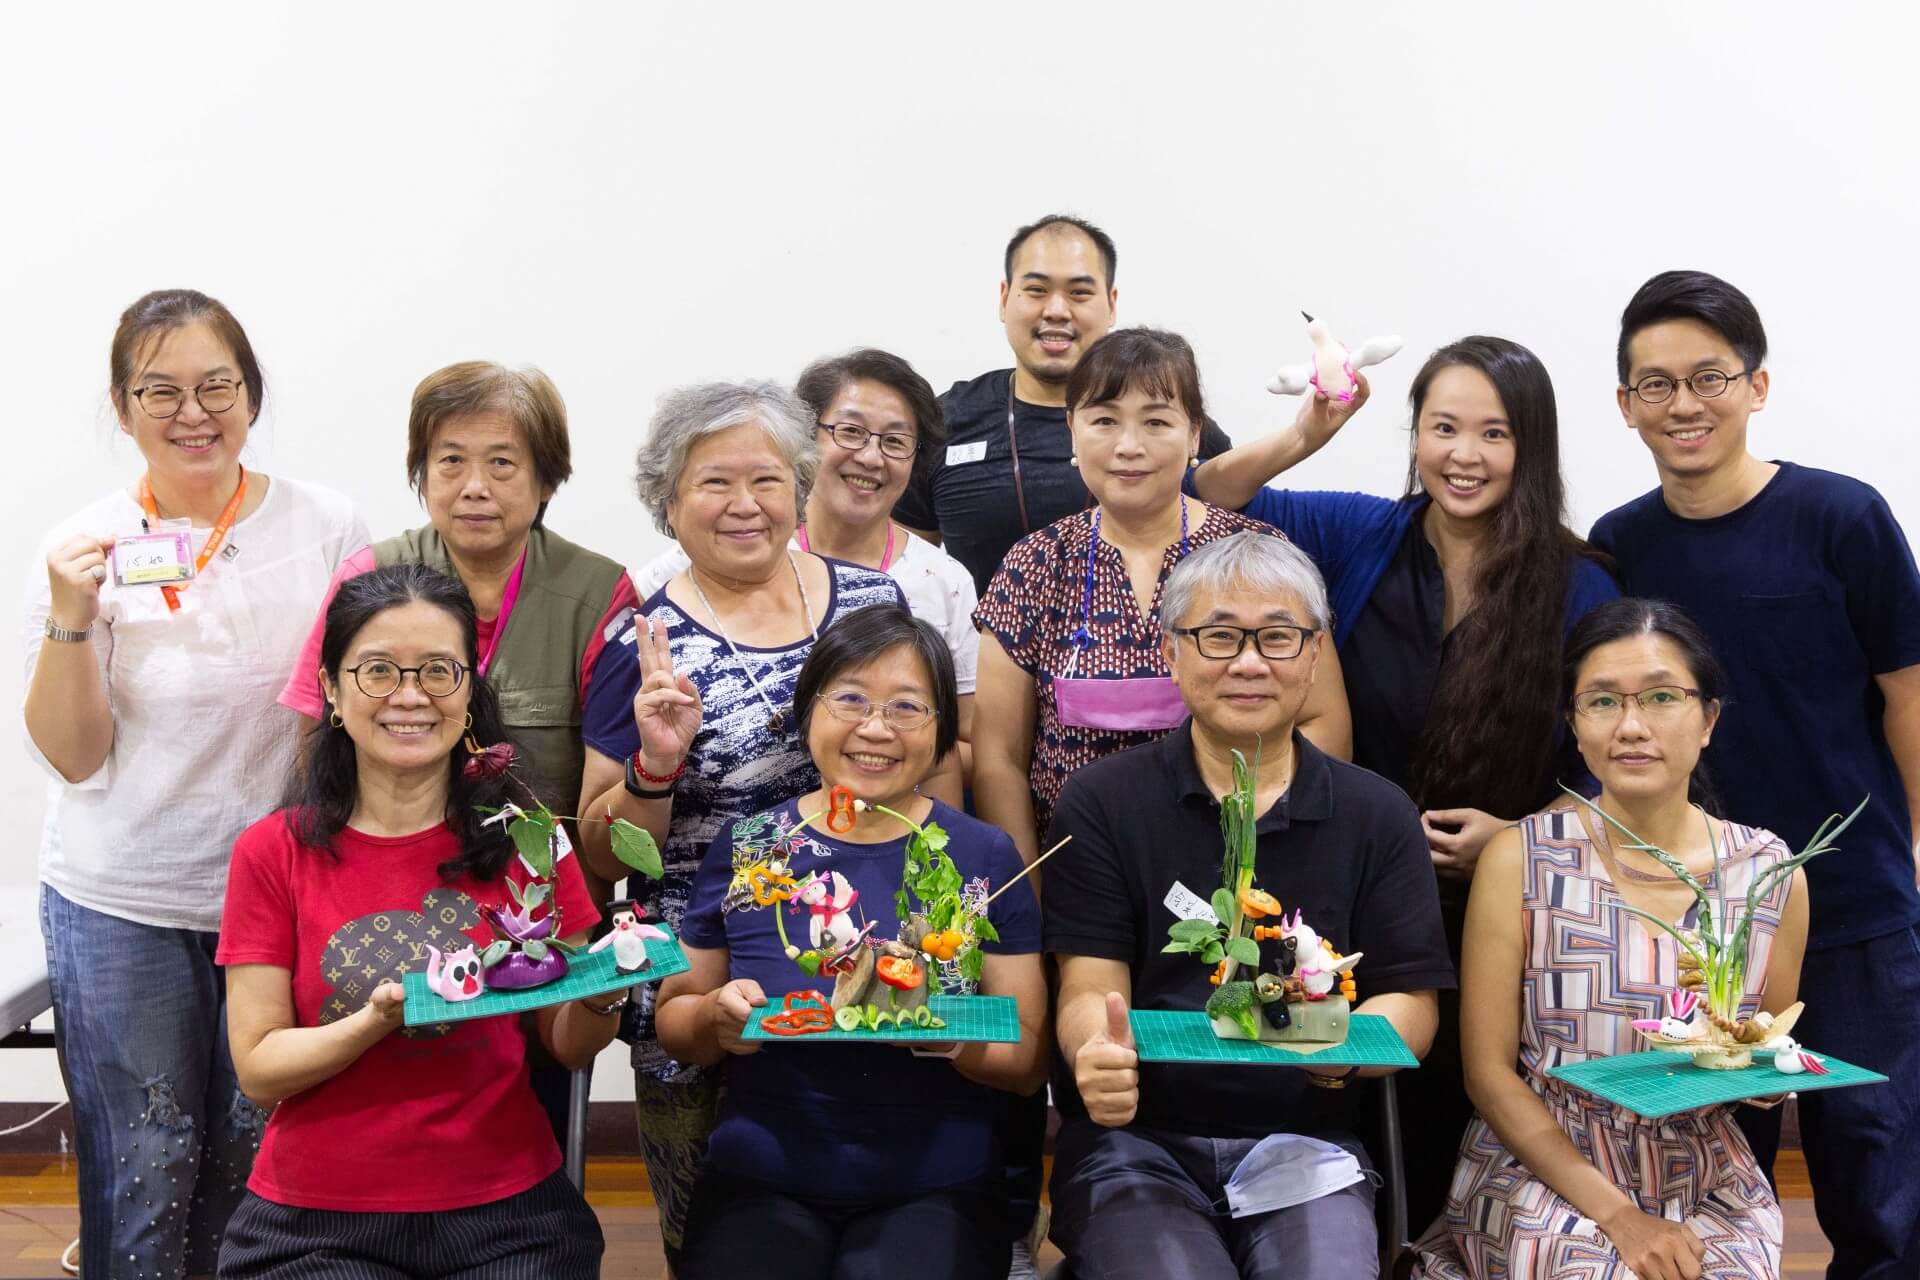 樂齡民眾參與工作坊課程  ©臺北市立美術館-圖片